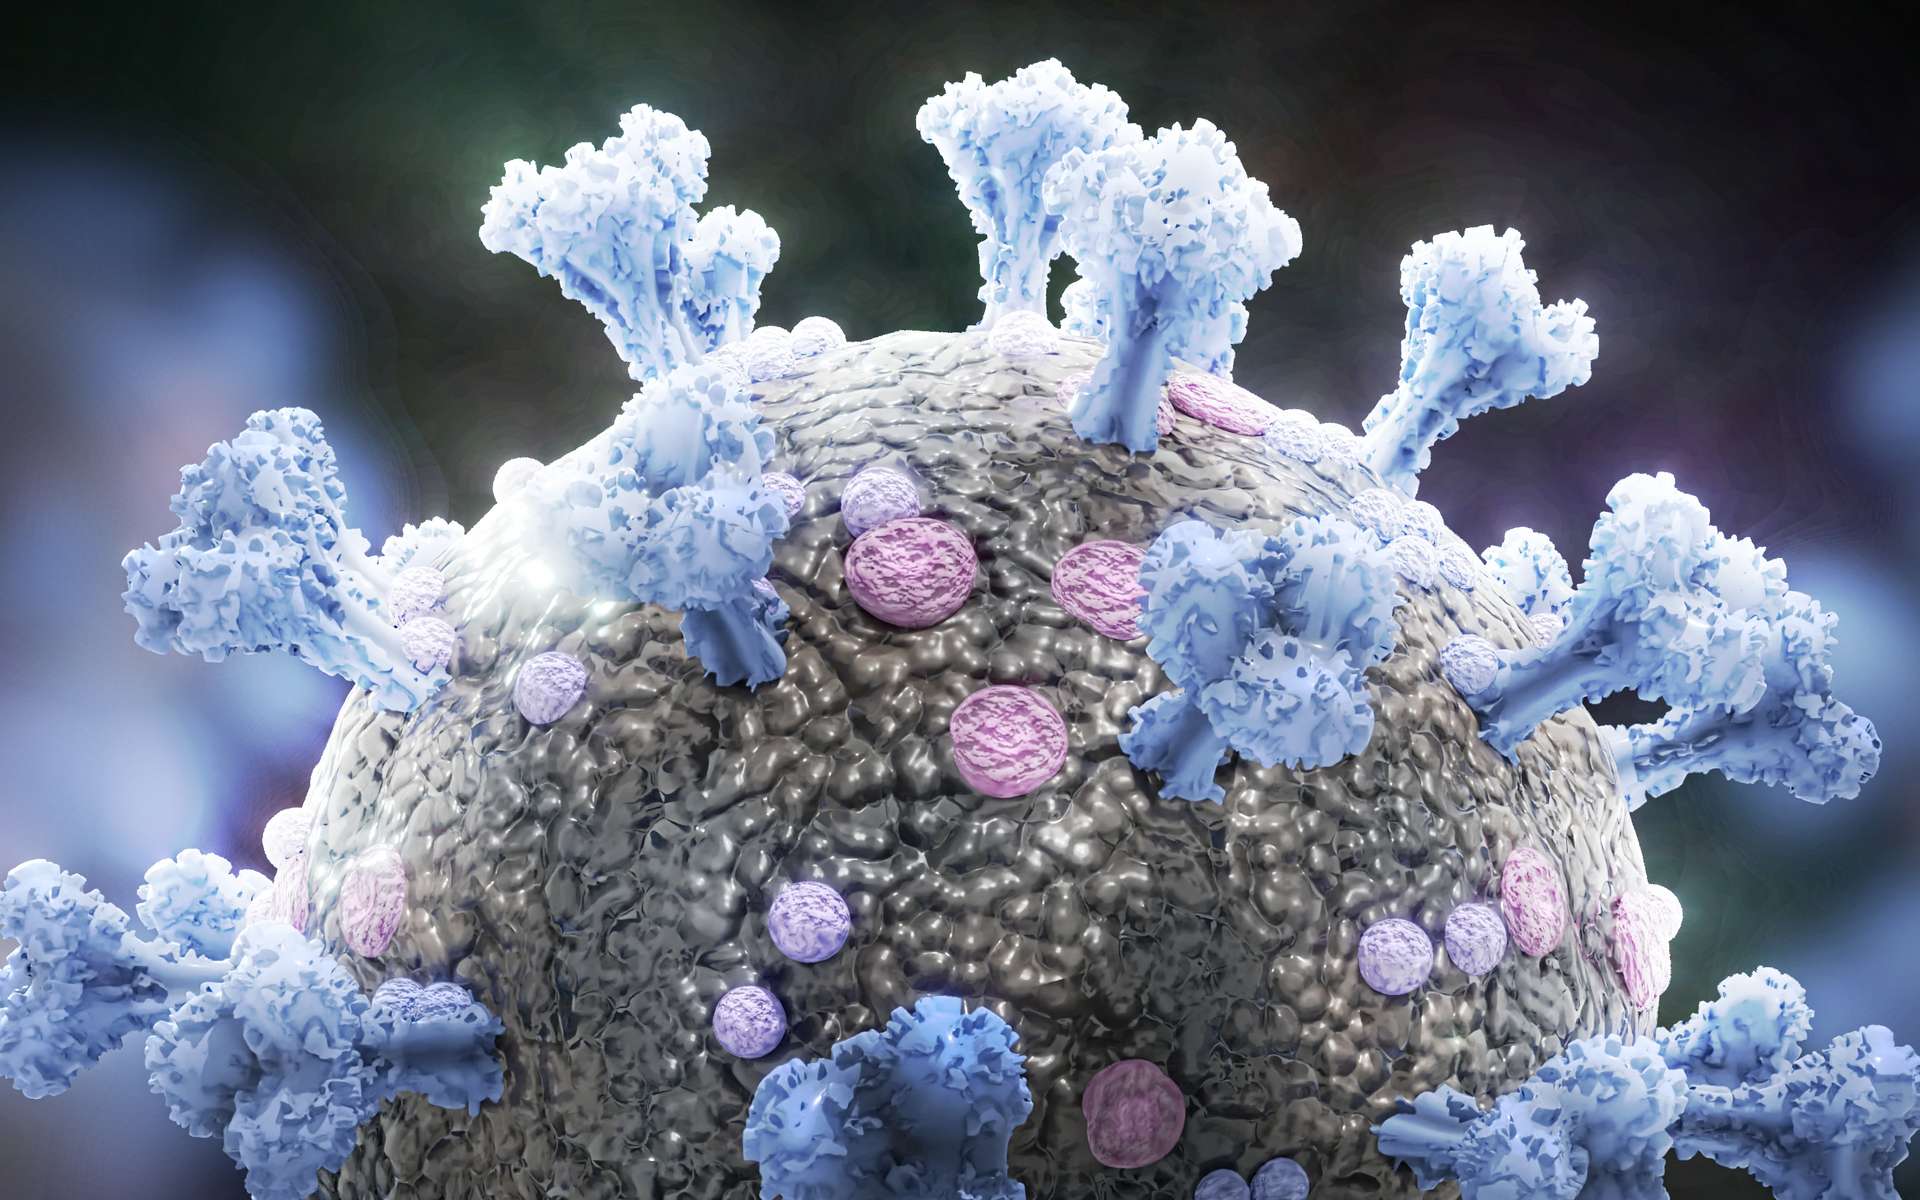 SARS-CoV-2 : une carte géante des interactions entre protéines virales et cellules humaines. © dottedyeti, Adobe Stock